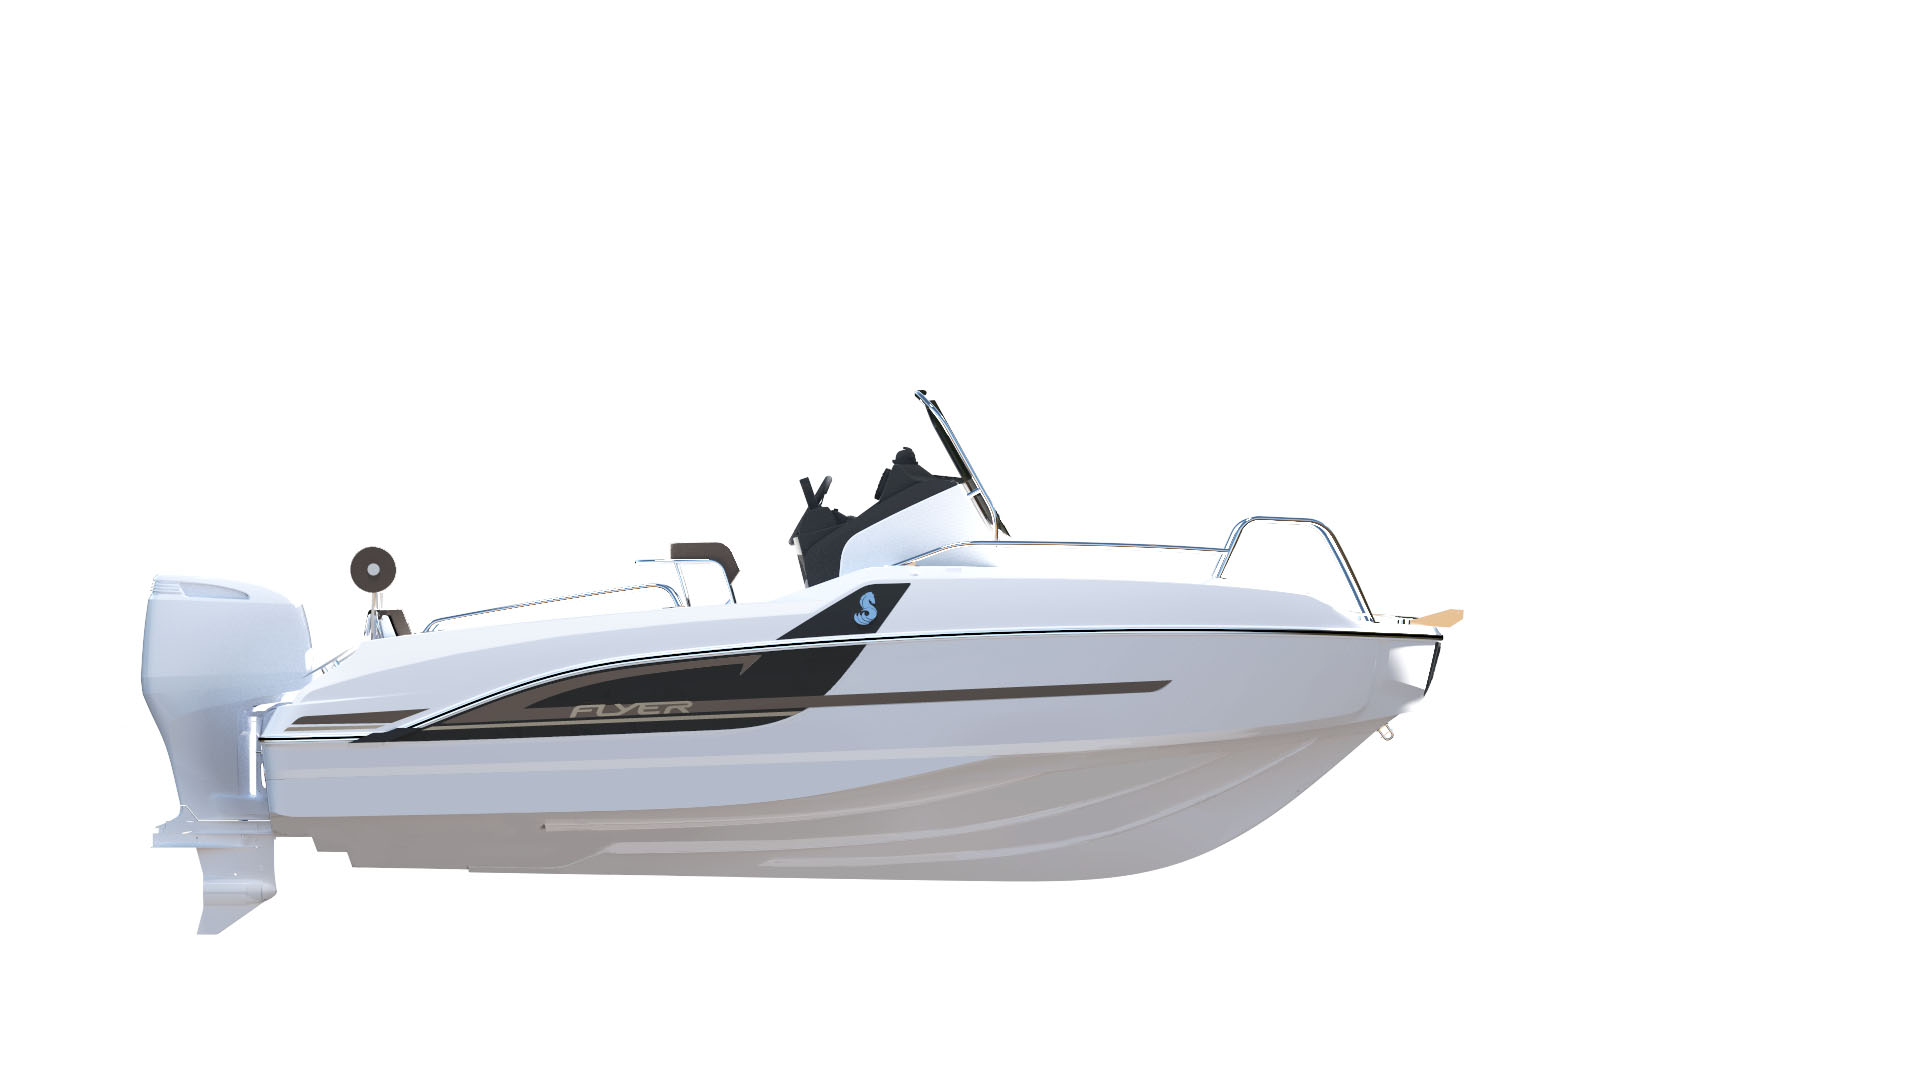  Beneteau: presenta i nuovi modelli Flyer e il nuovo Oceanis 60